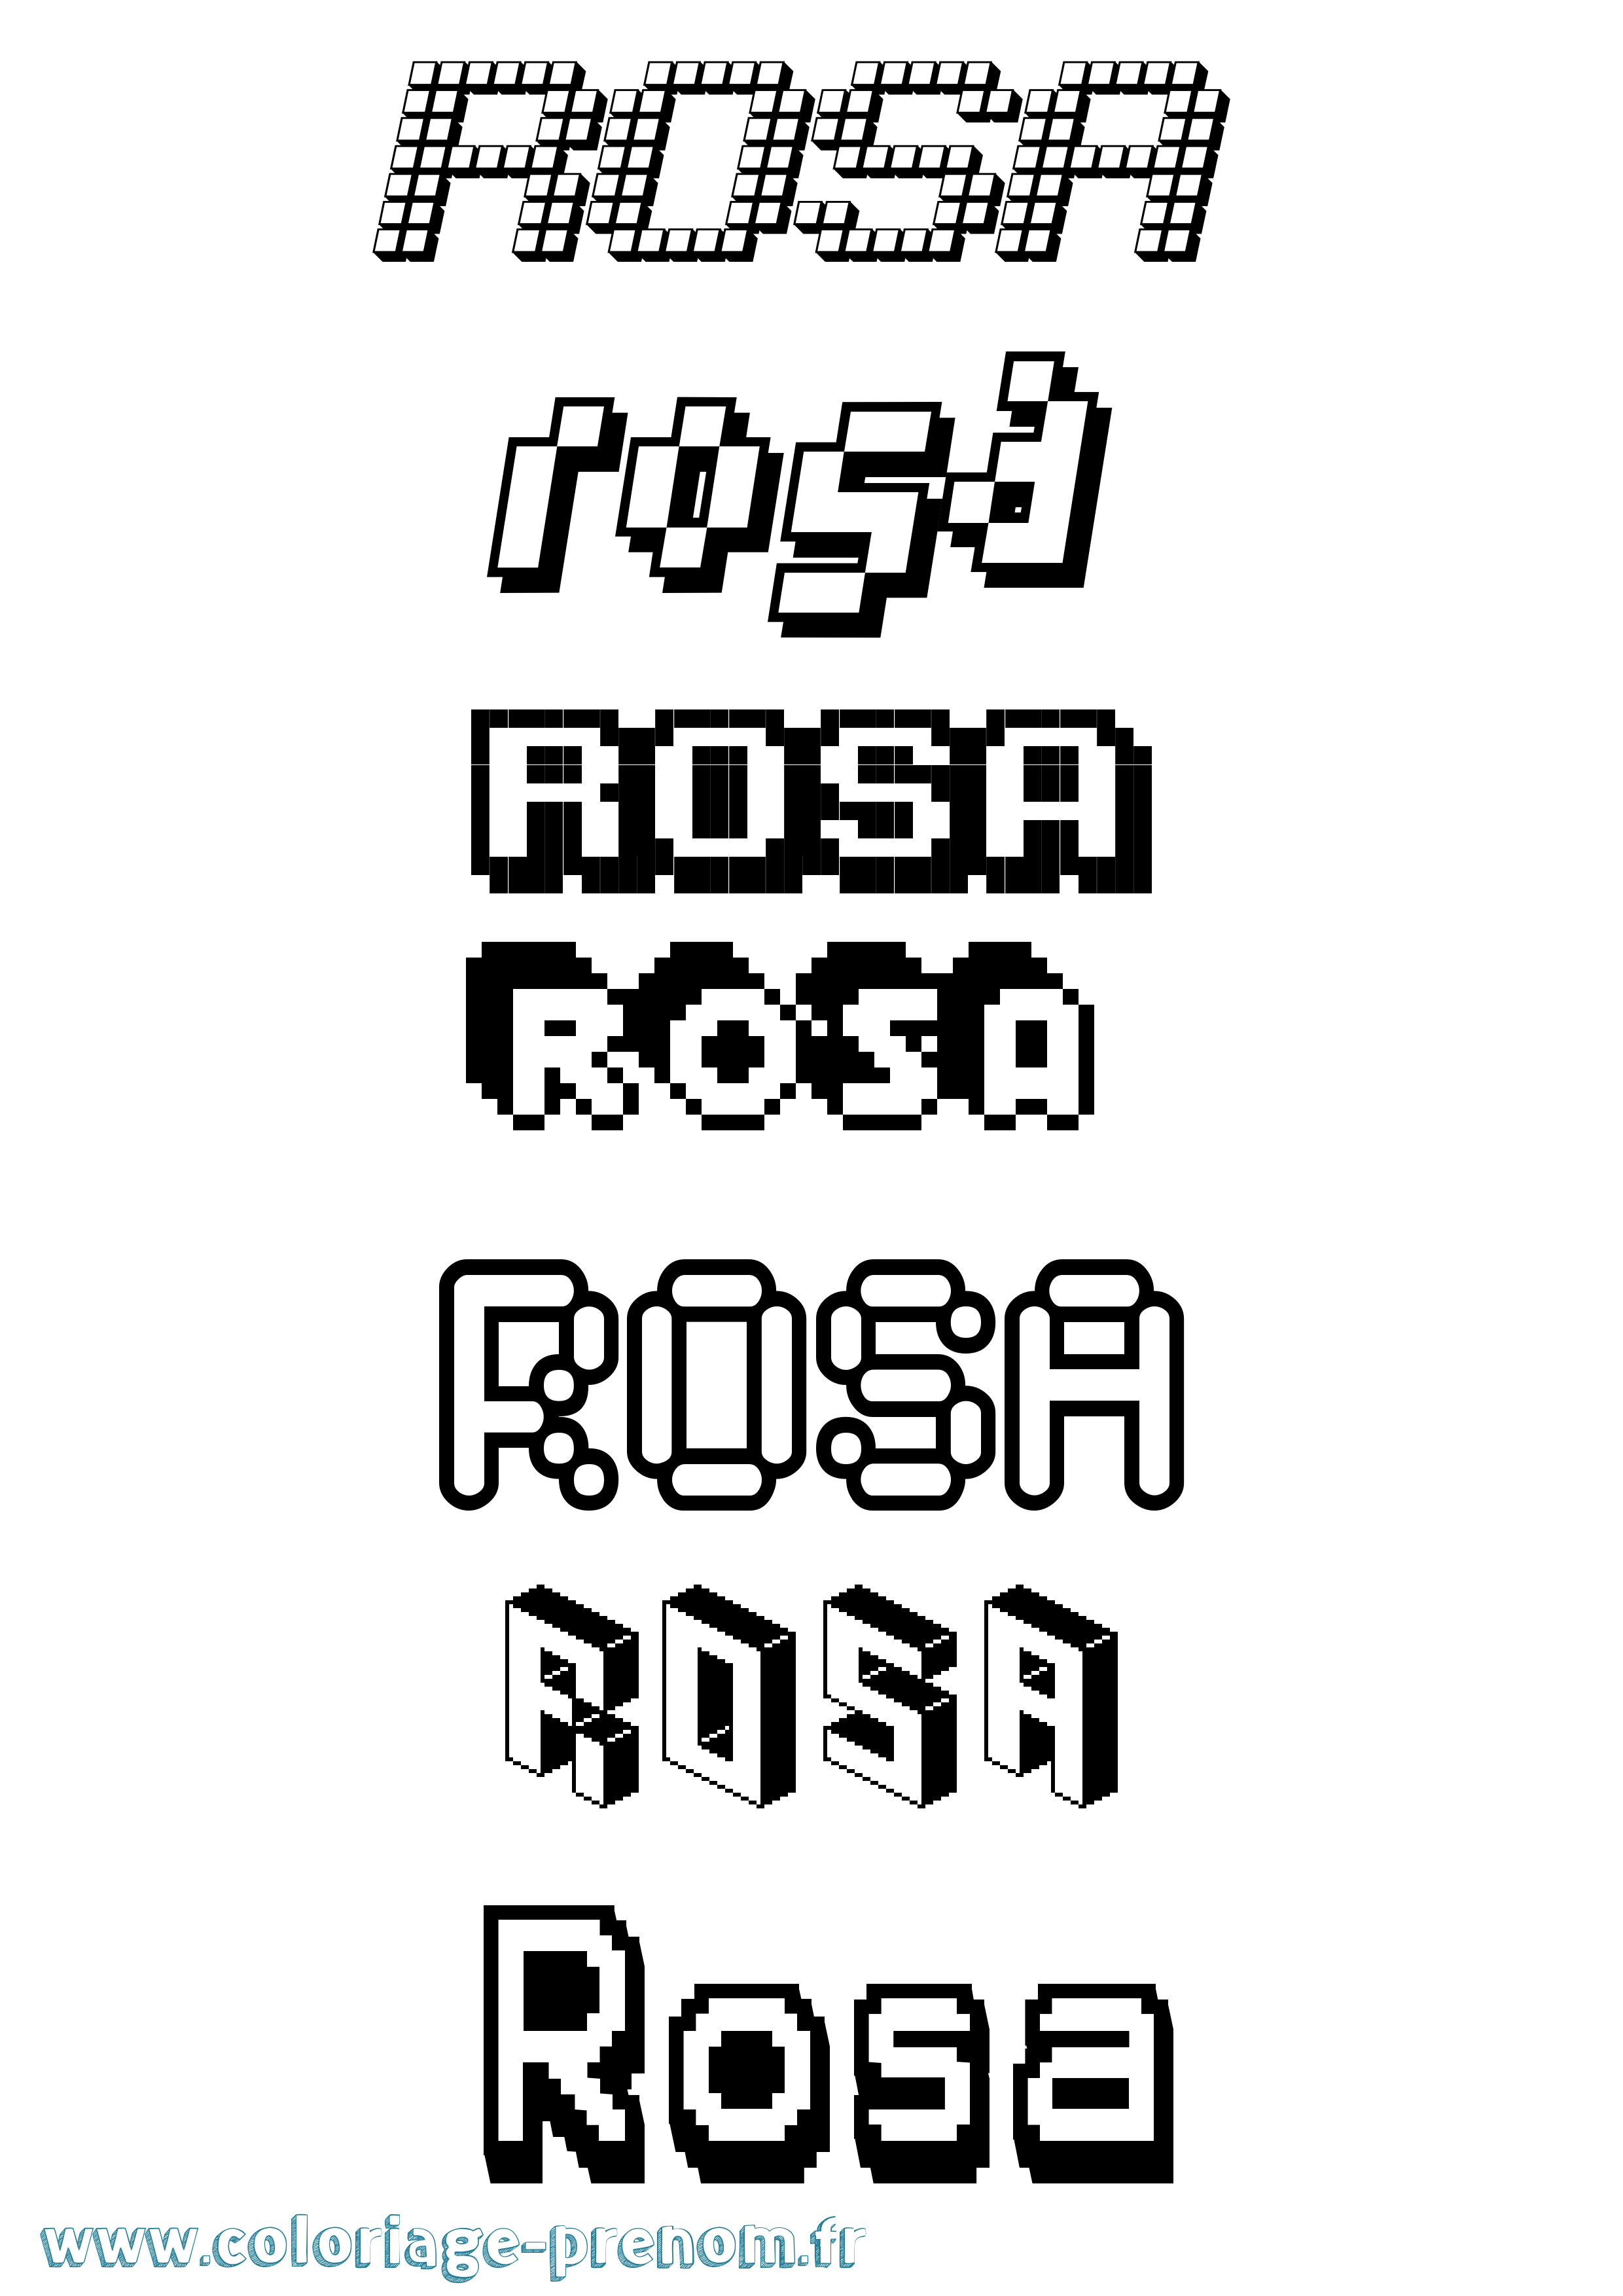 Coloriage prénom Rosa Pixel